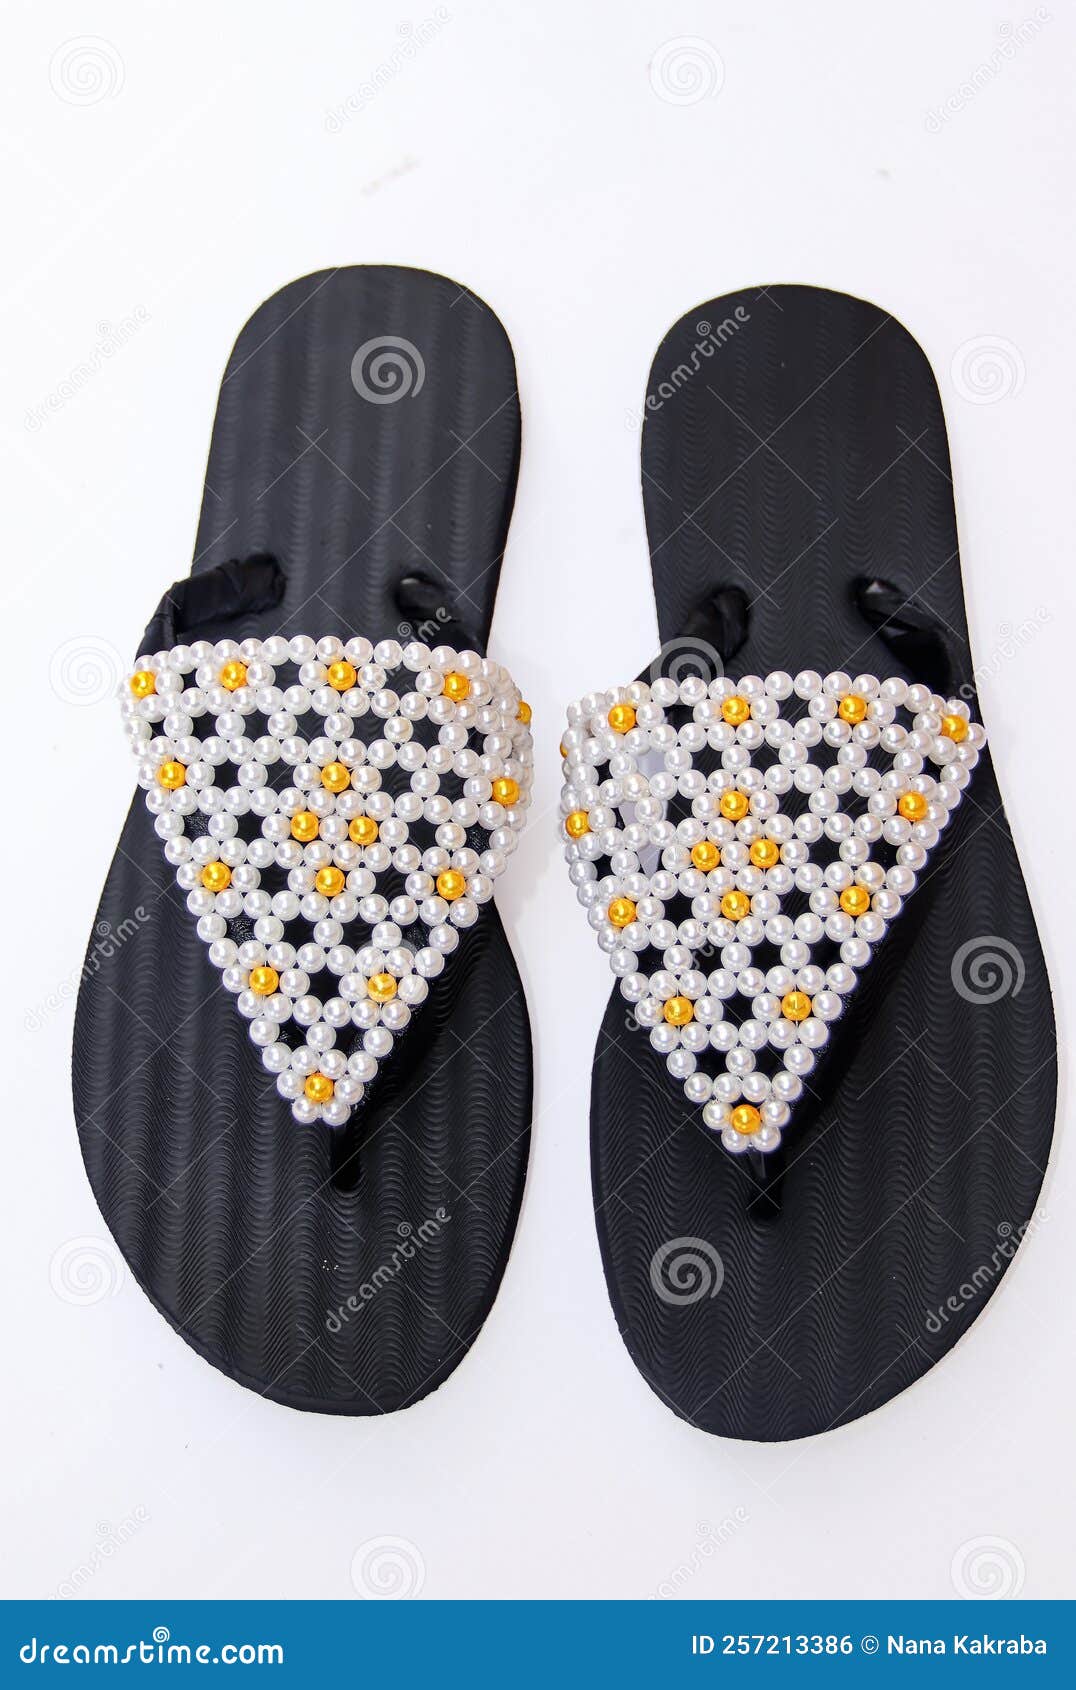 Masai Beaded sandals African sandals Women Sandals Leather sandals  handmade fabric  Africabaiecom